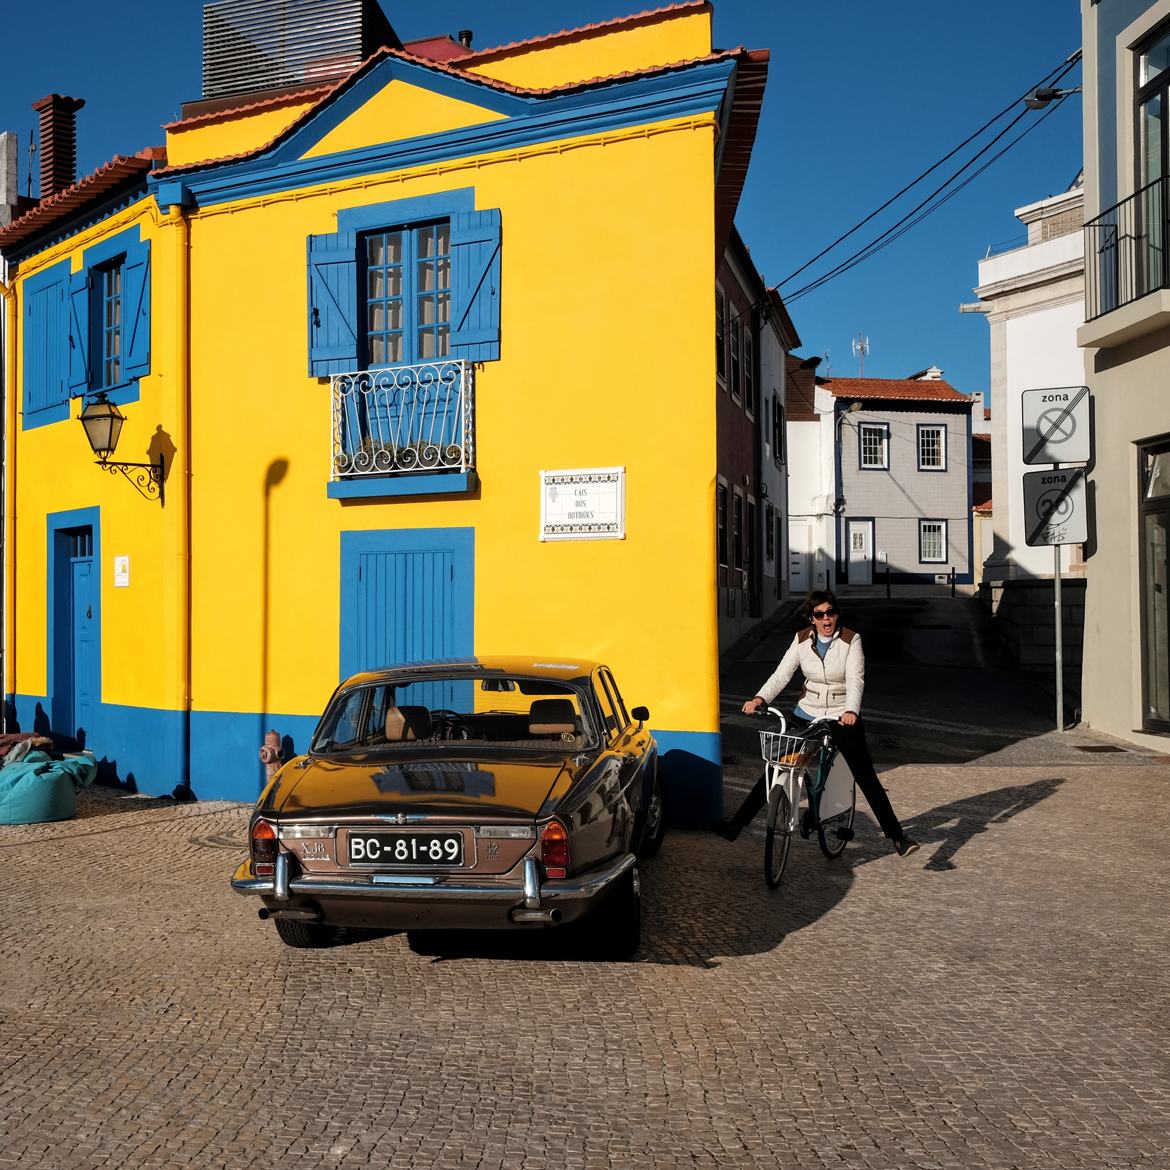 La jaguar, la cycliste et la maison jaune aux volets bleus